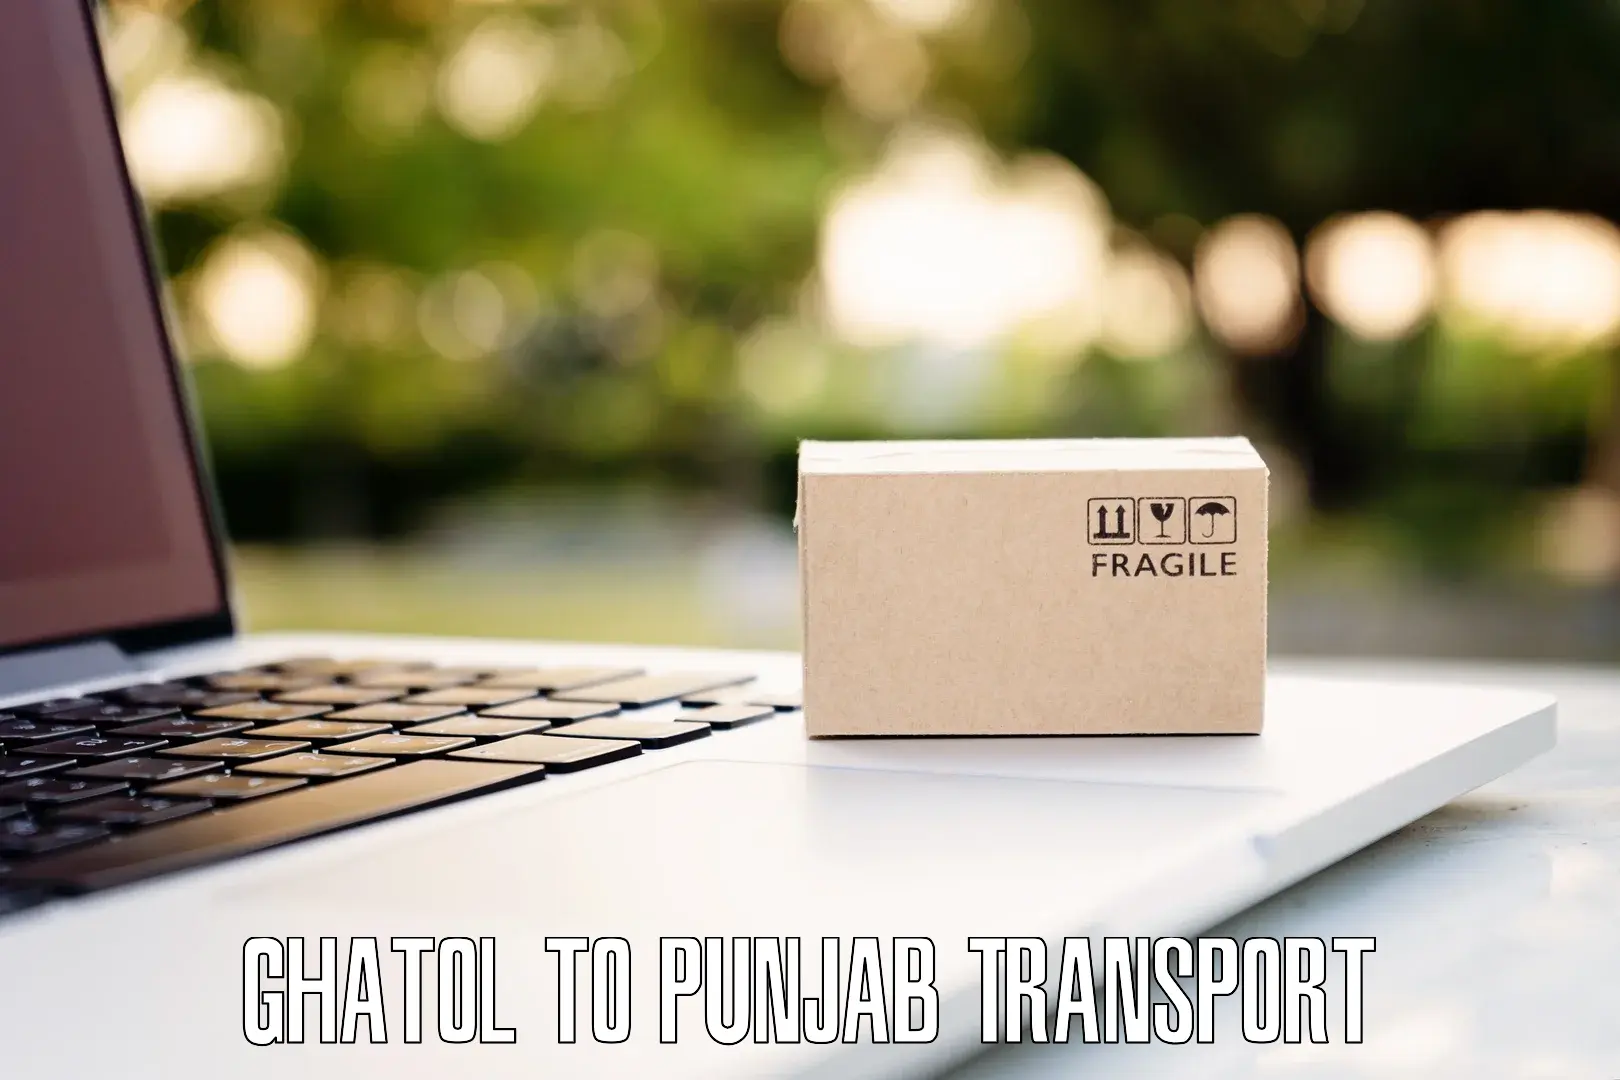 Online transport booking Ghatol to Tarsikka